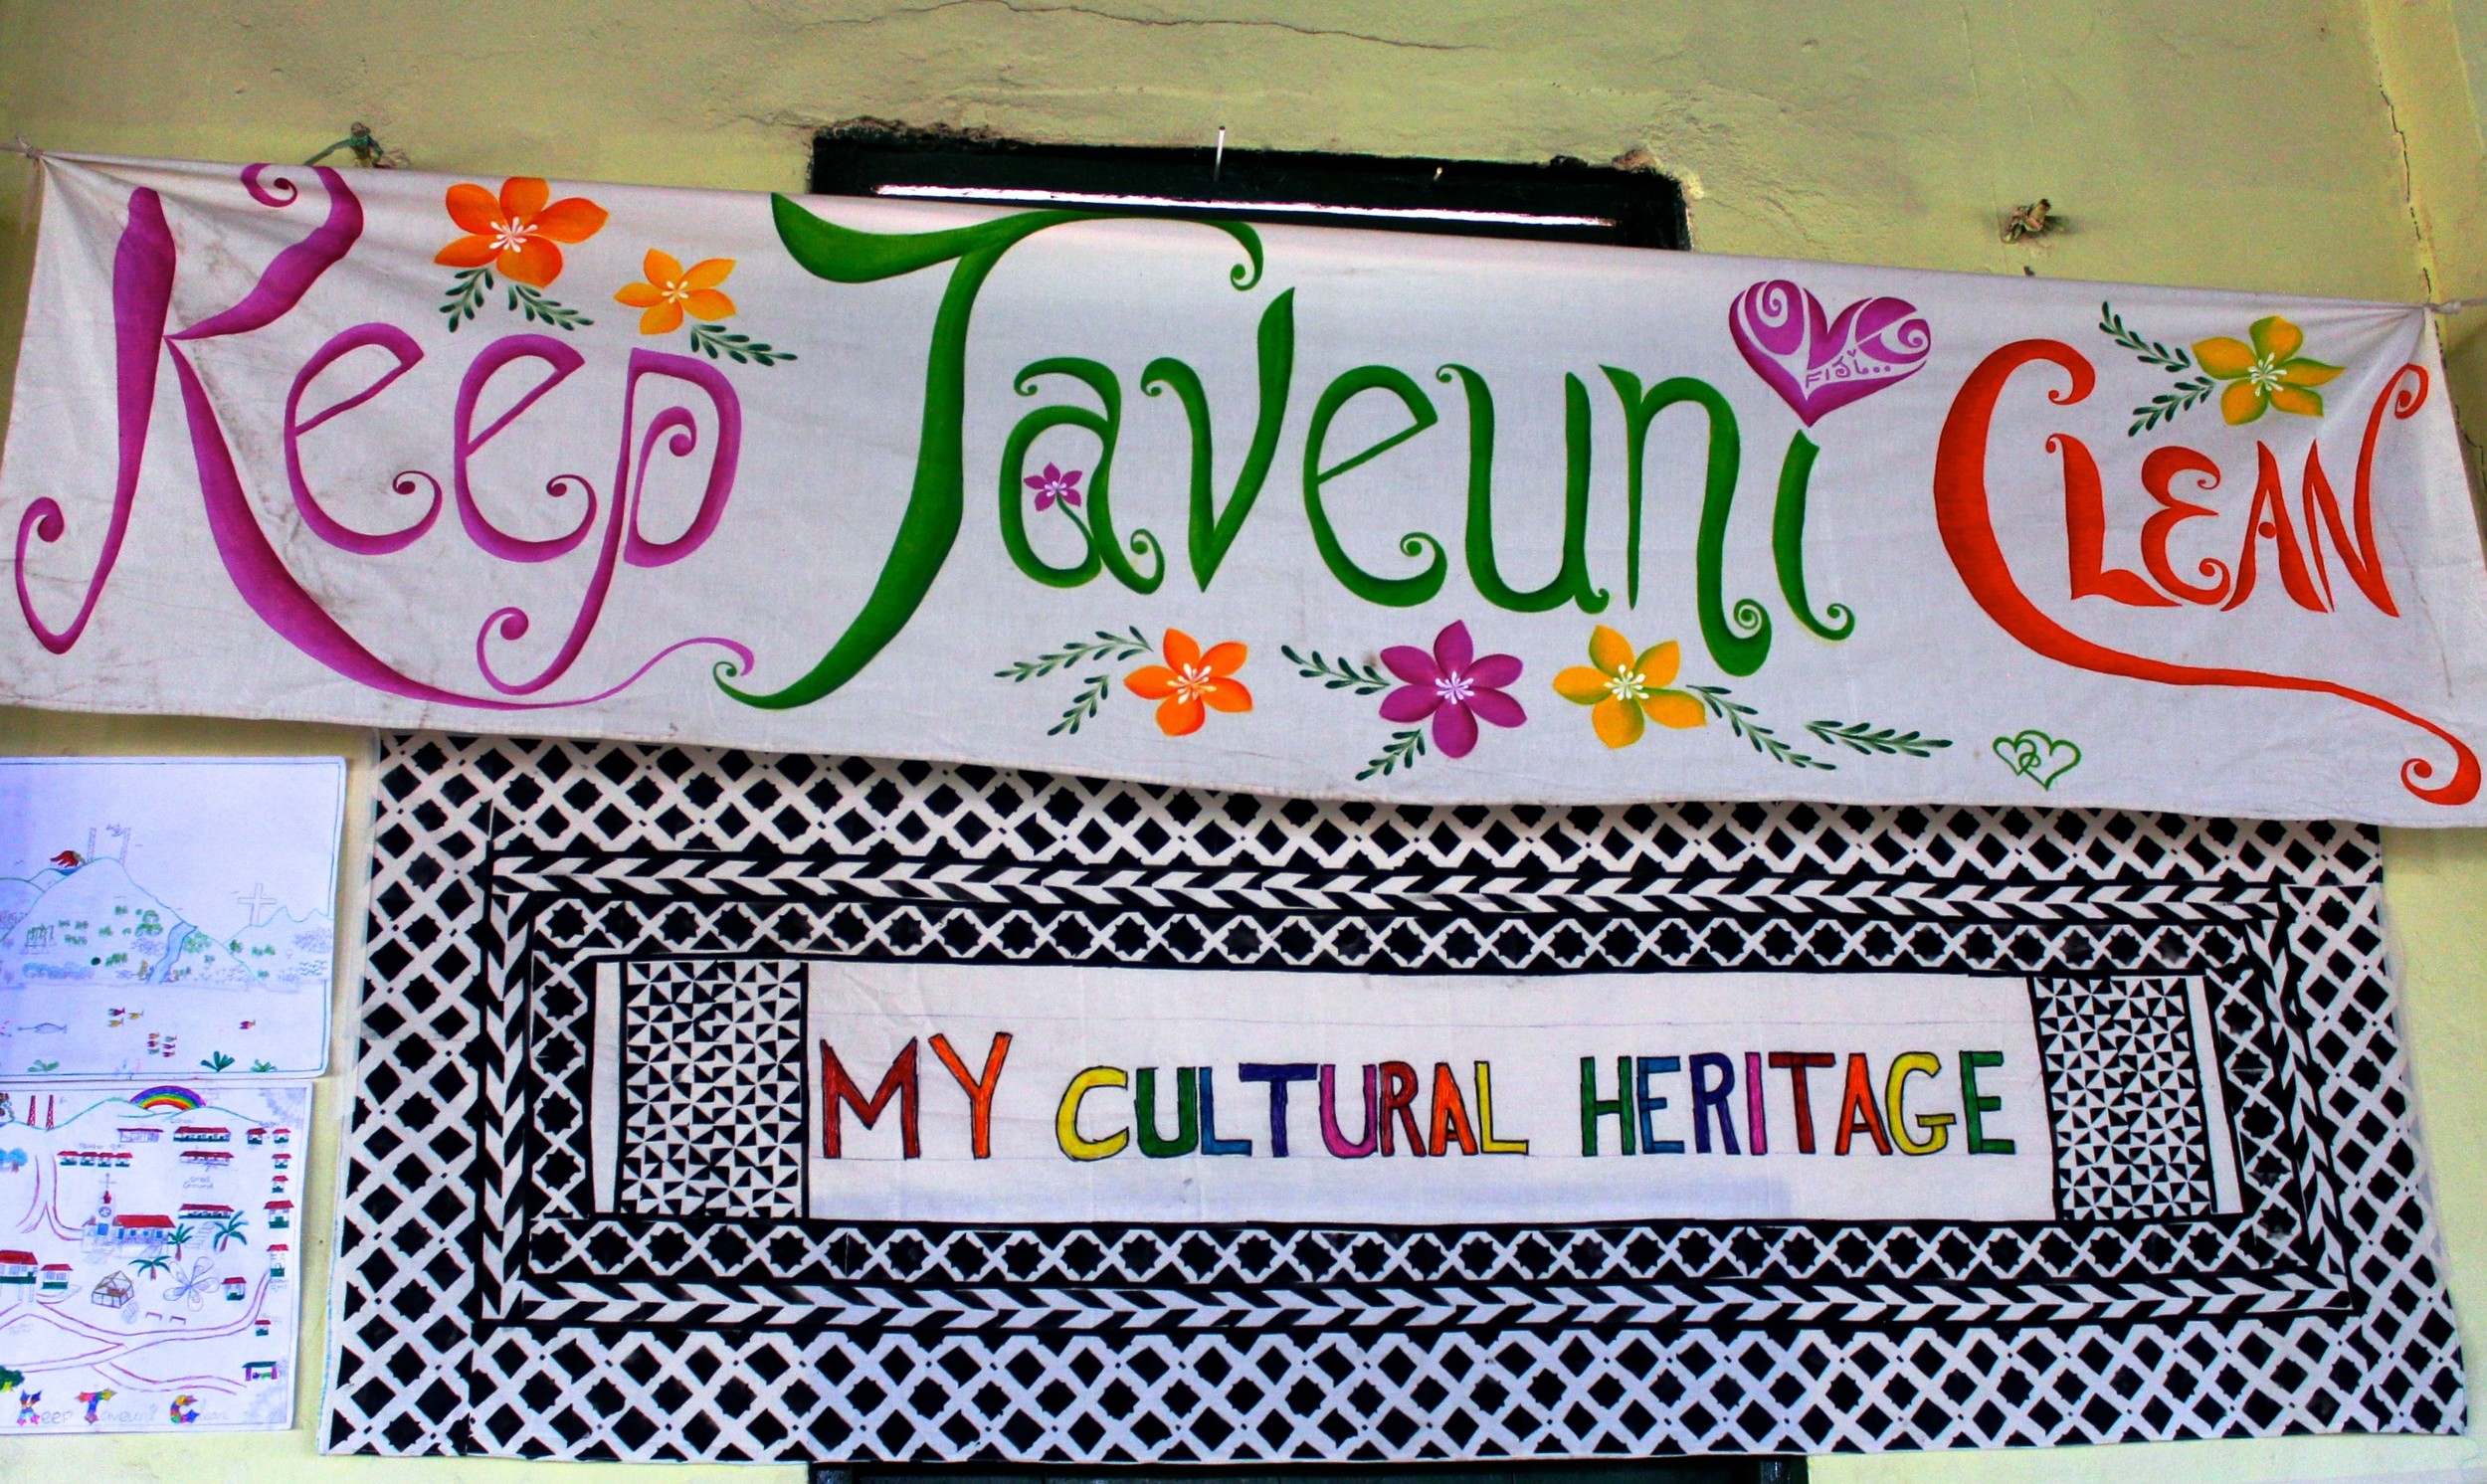 Keep Taveuni Clean banner